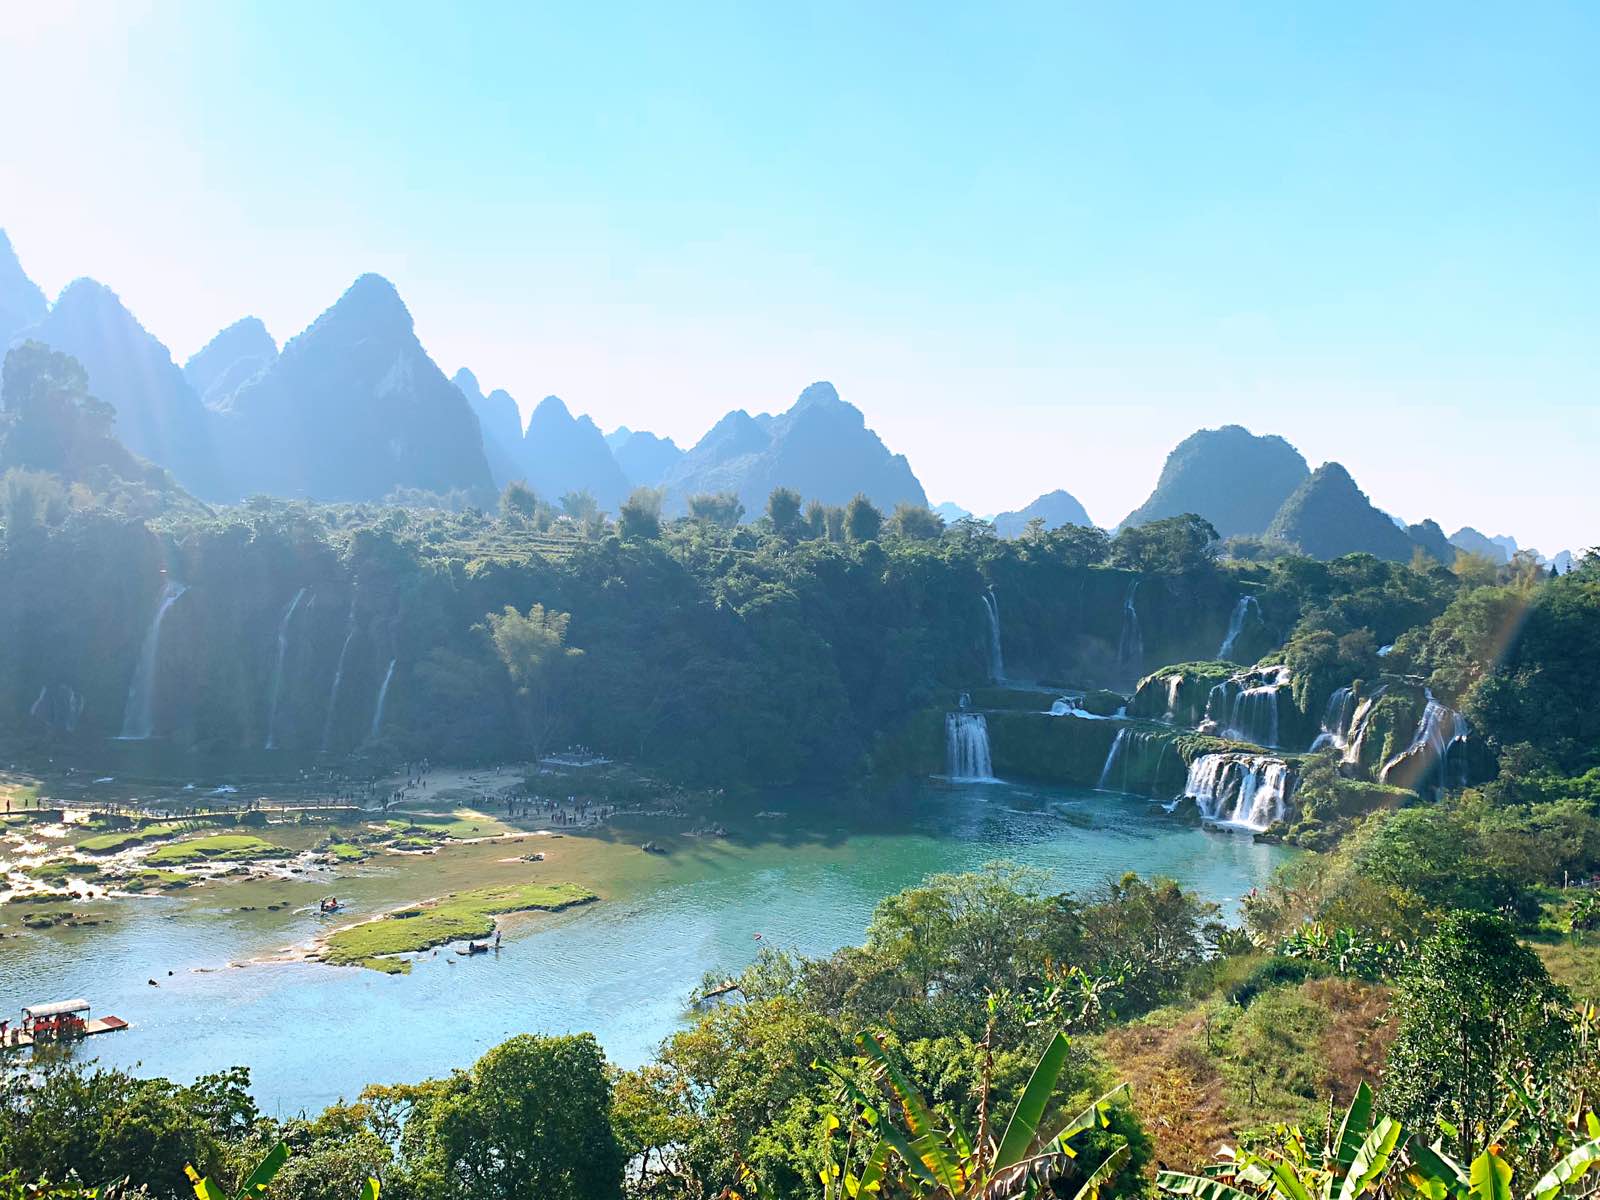 德天瀑布位于广西壮族自治区崇左市大新县硕龙镇德天村，中国与越南边境处的